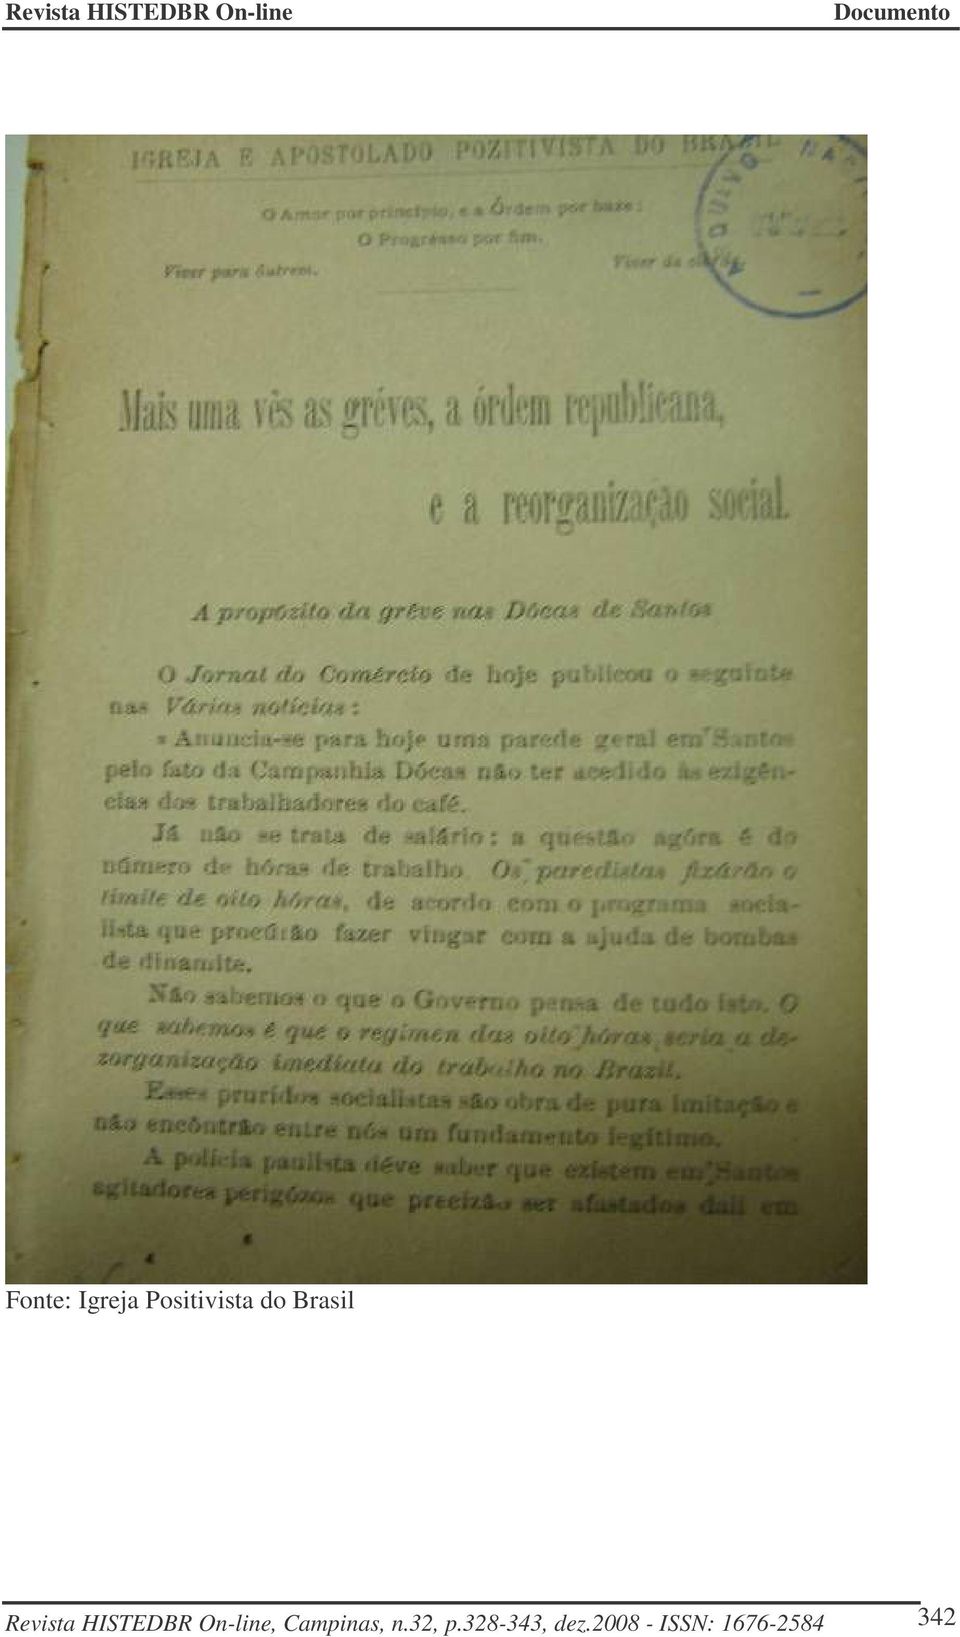 On-line, Campinas, n.32, p.